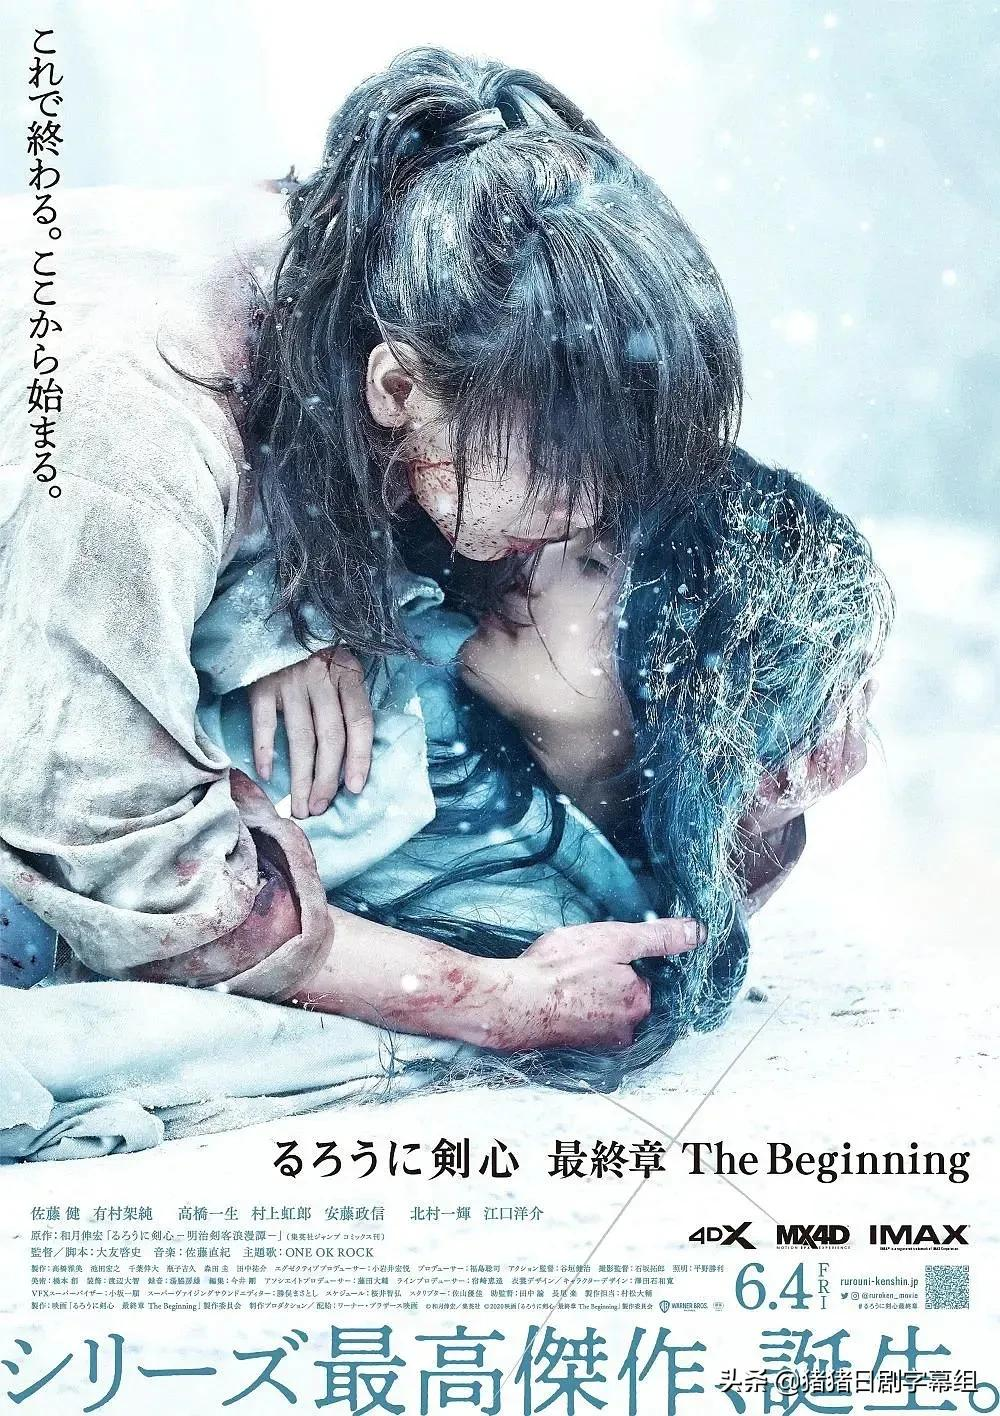 电影《浪客剑心》全系列5部作品将在第24届上海国际电影节上展映